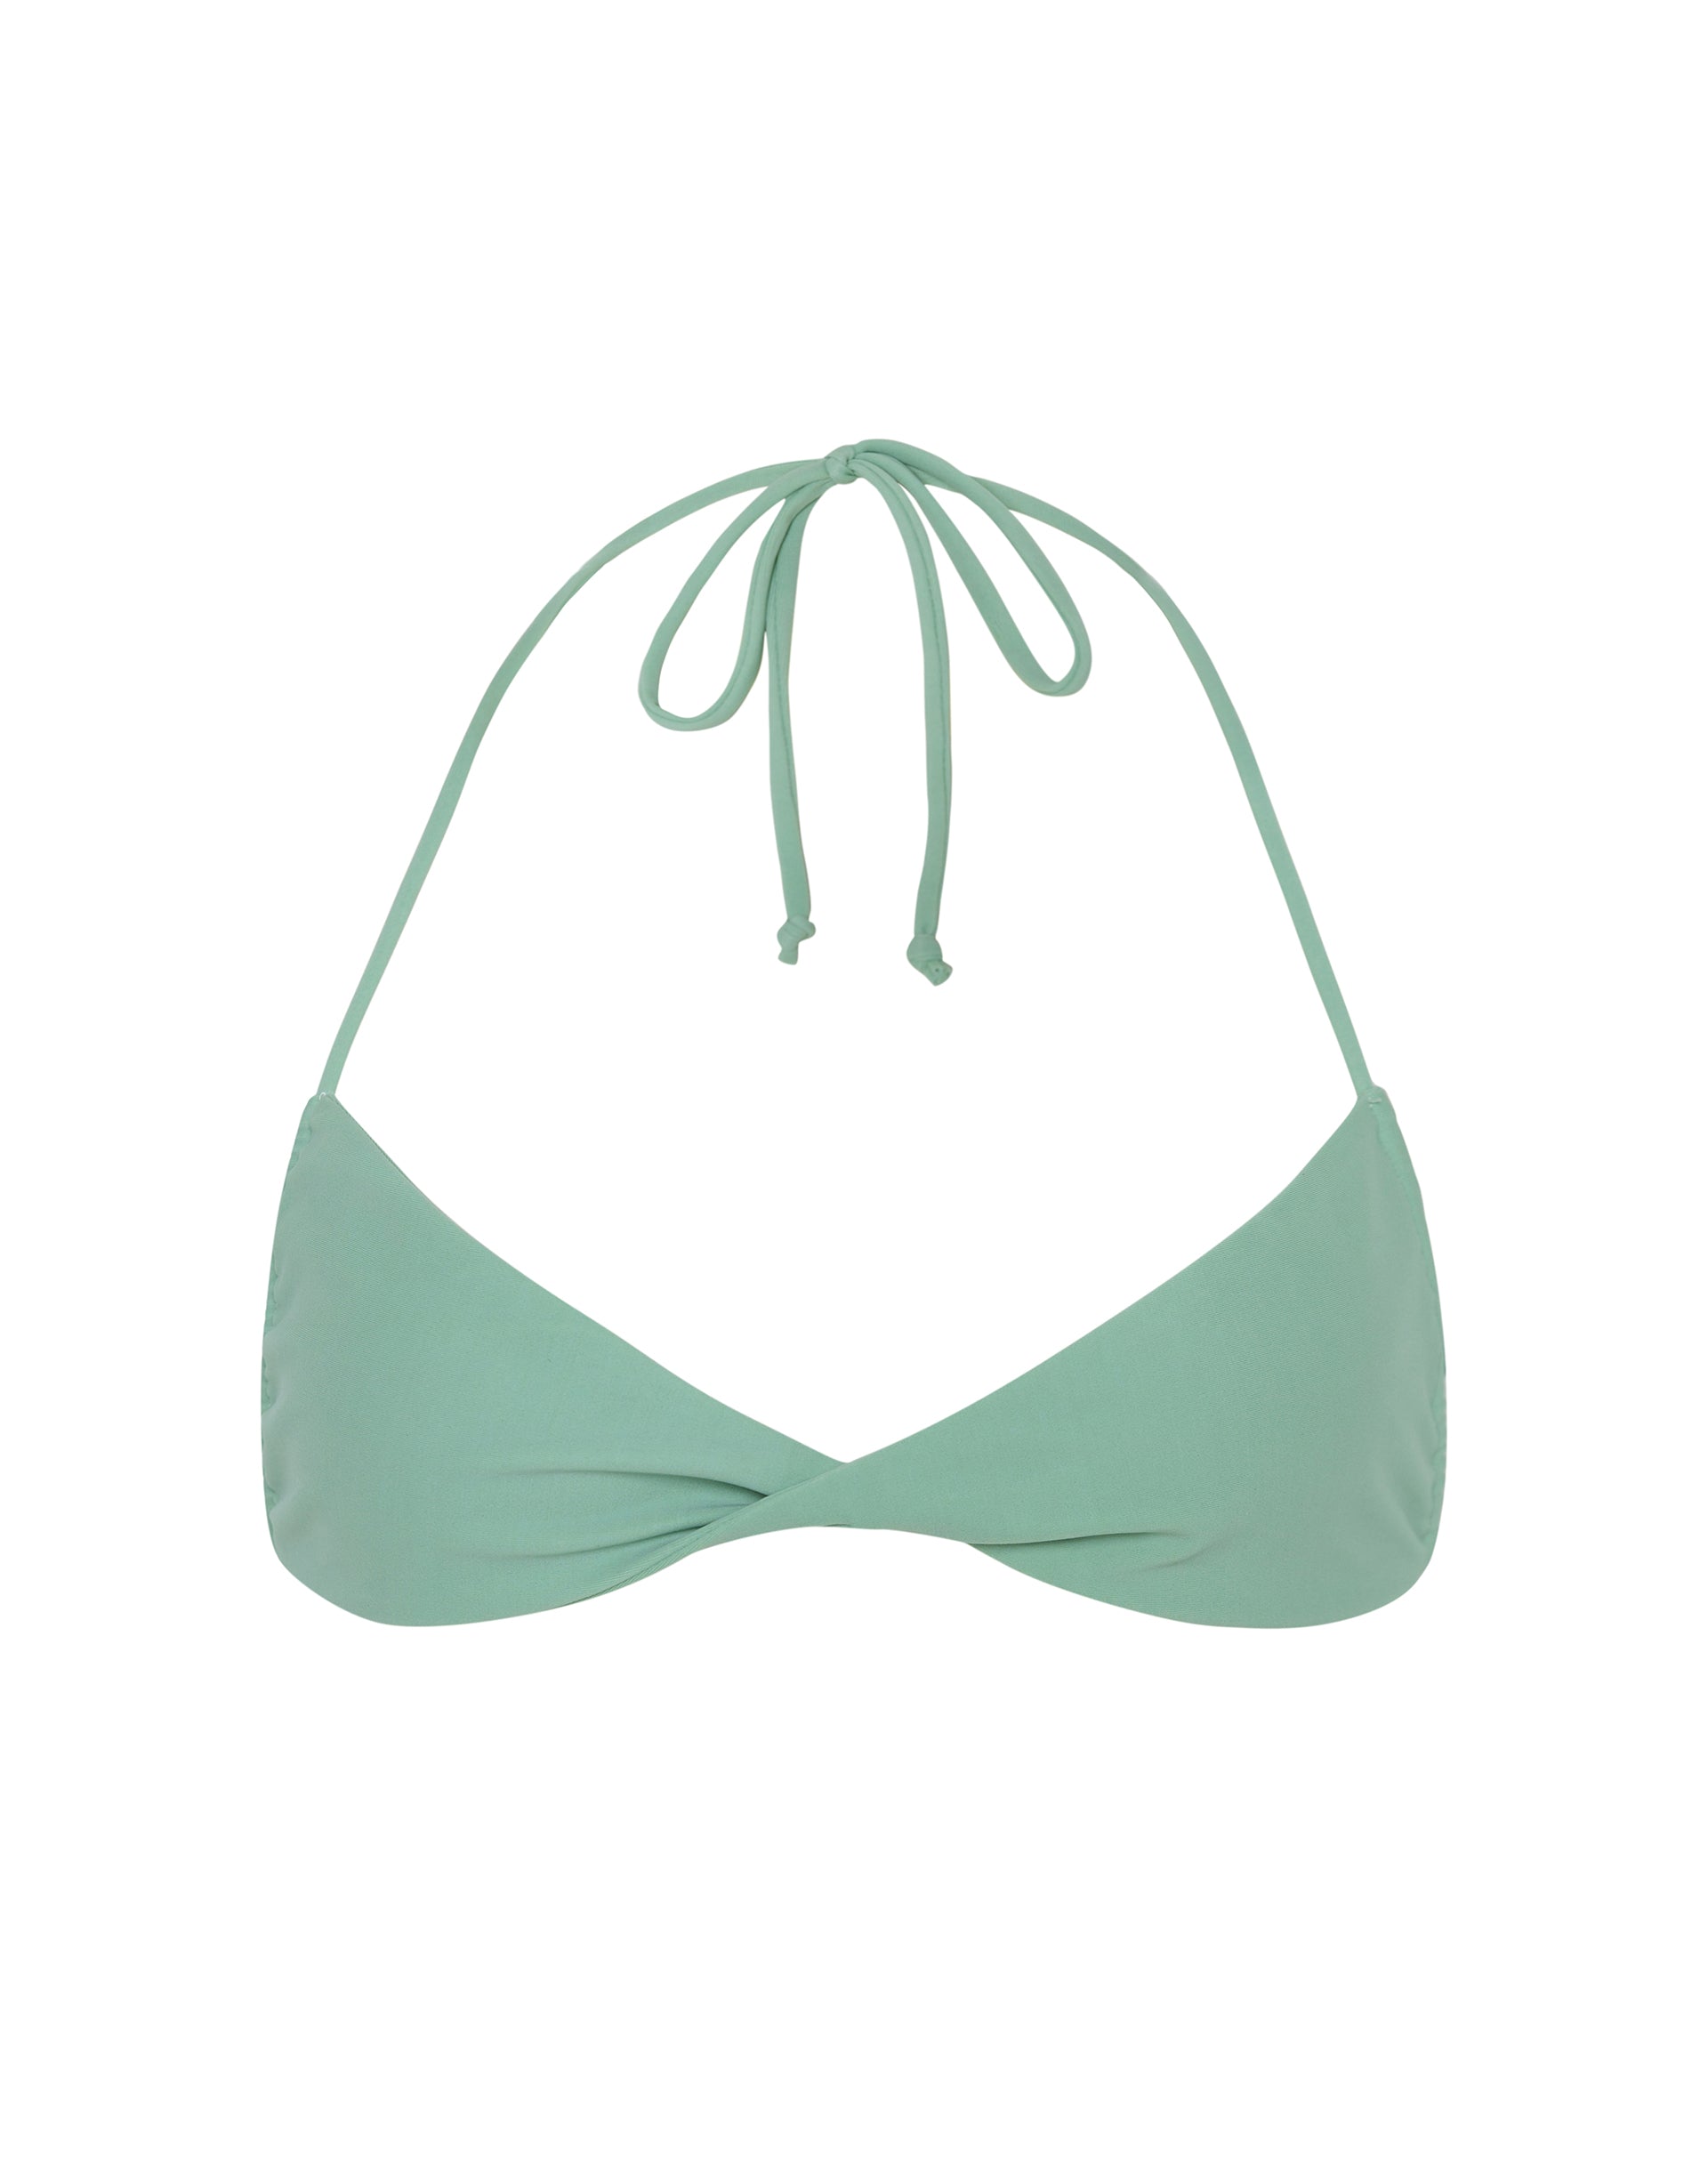 Imagen del sujetador de bikini Laufey en verde liquen